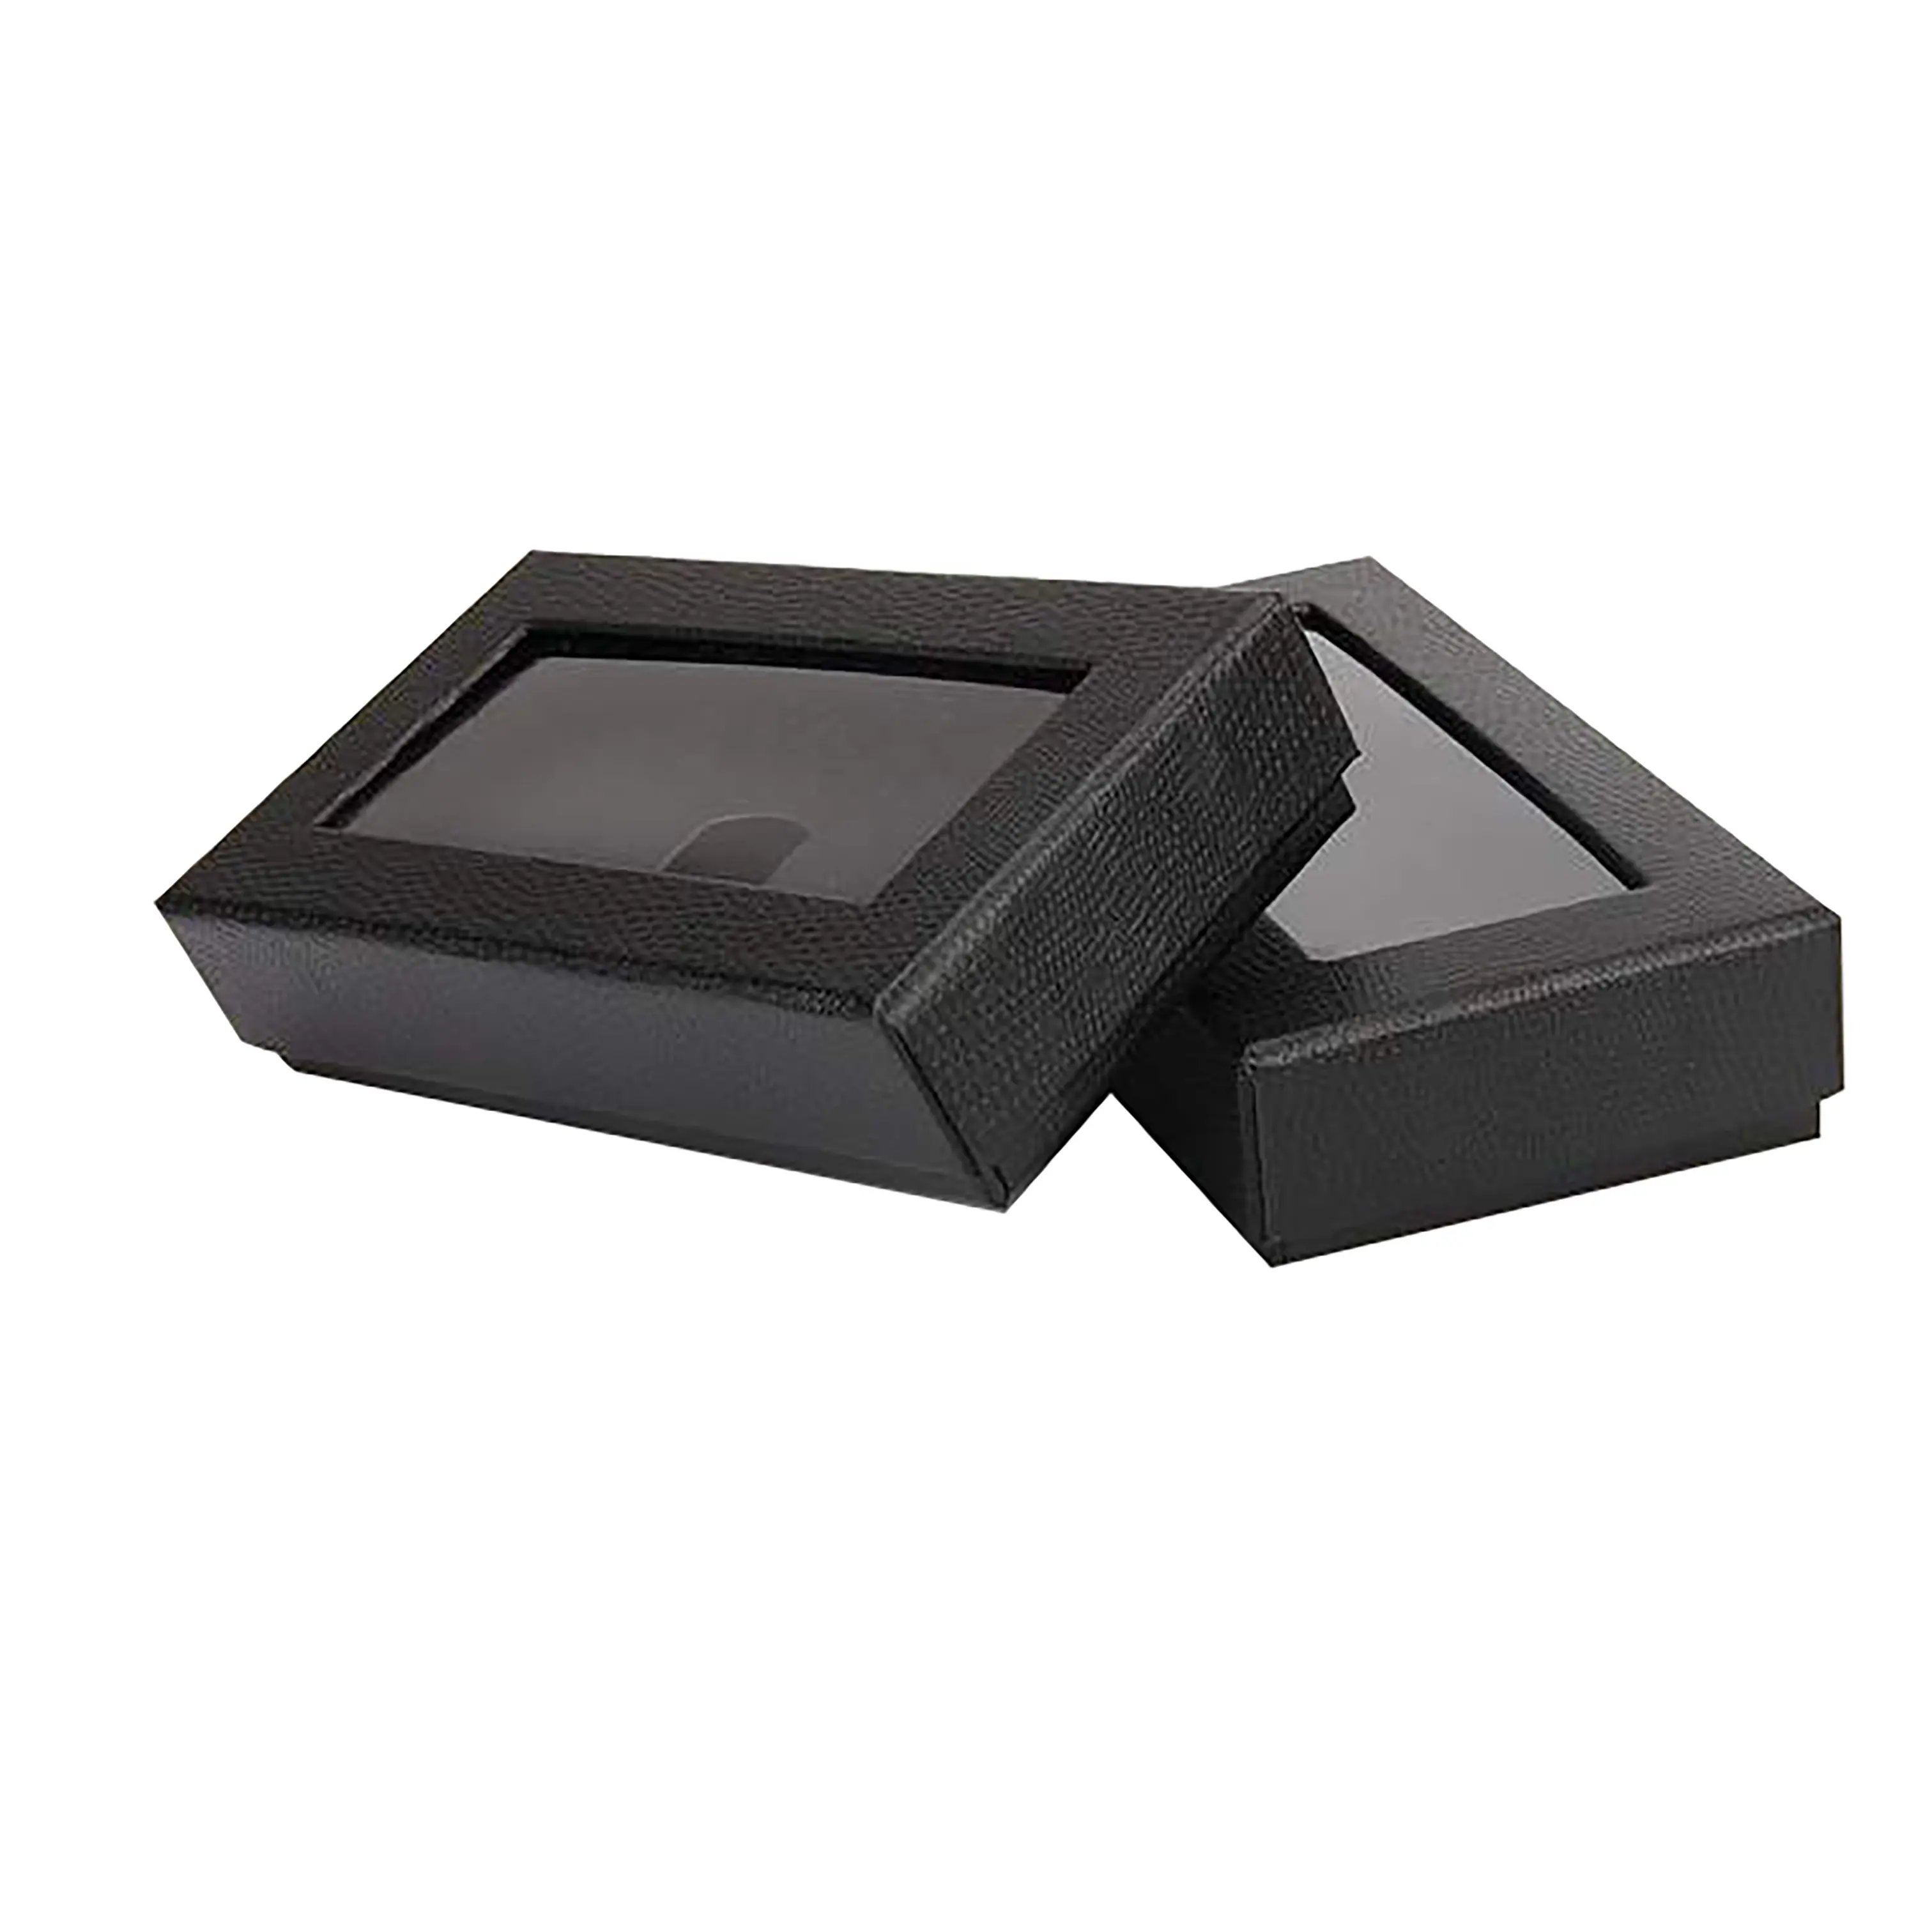 काले उपहार बॉक्स स्पष्ट खिड़की के साथ लक्जरी पुरुषों की कढ़ाई रेशम धनुष टाई कस्टम उपहार पैकेजिंग बॉक्स धनुष टाई थोक उपहार बक्से